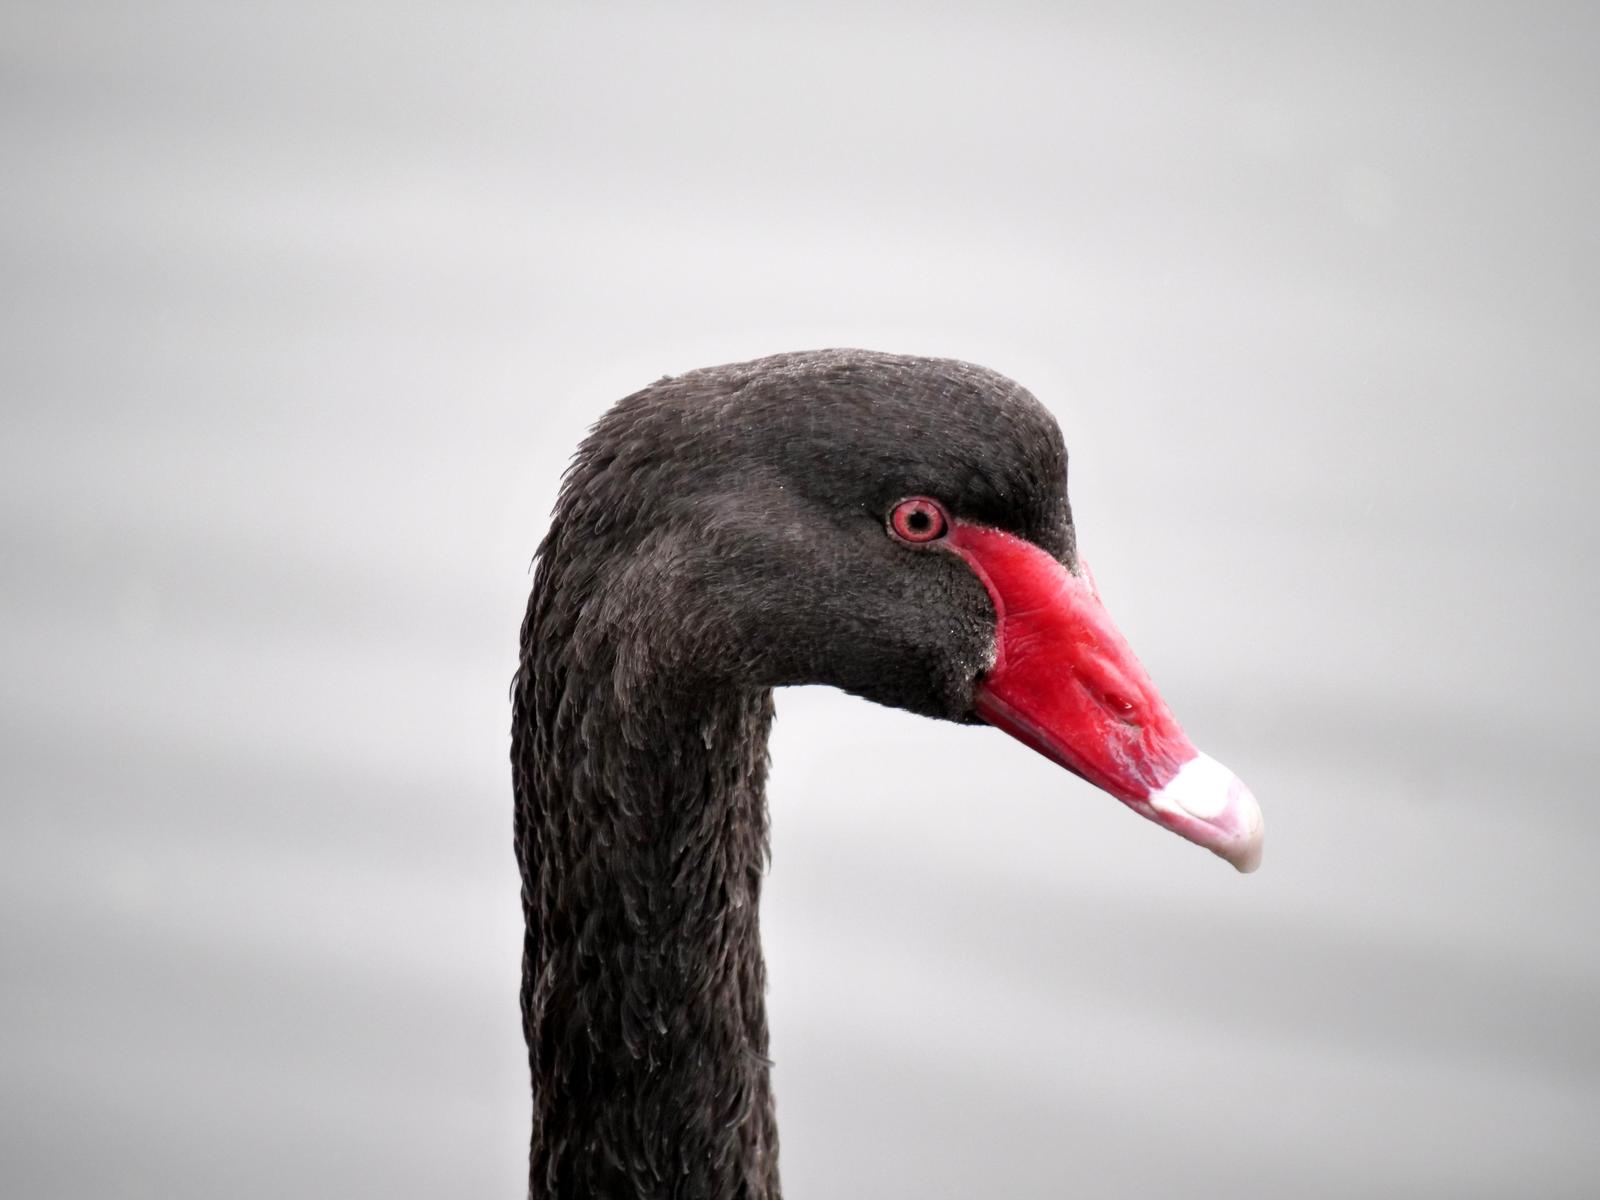 Black Swan Photo by Peter Lowe